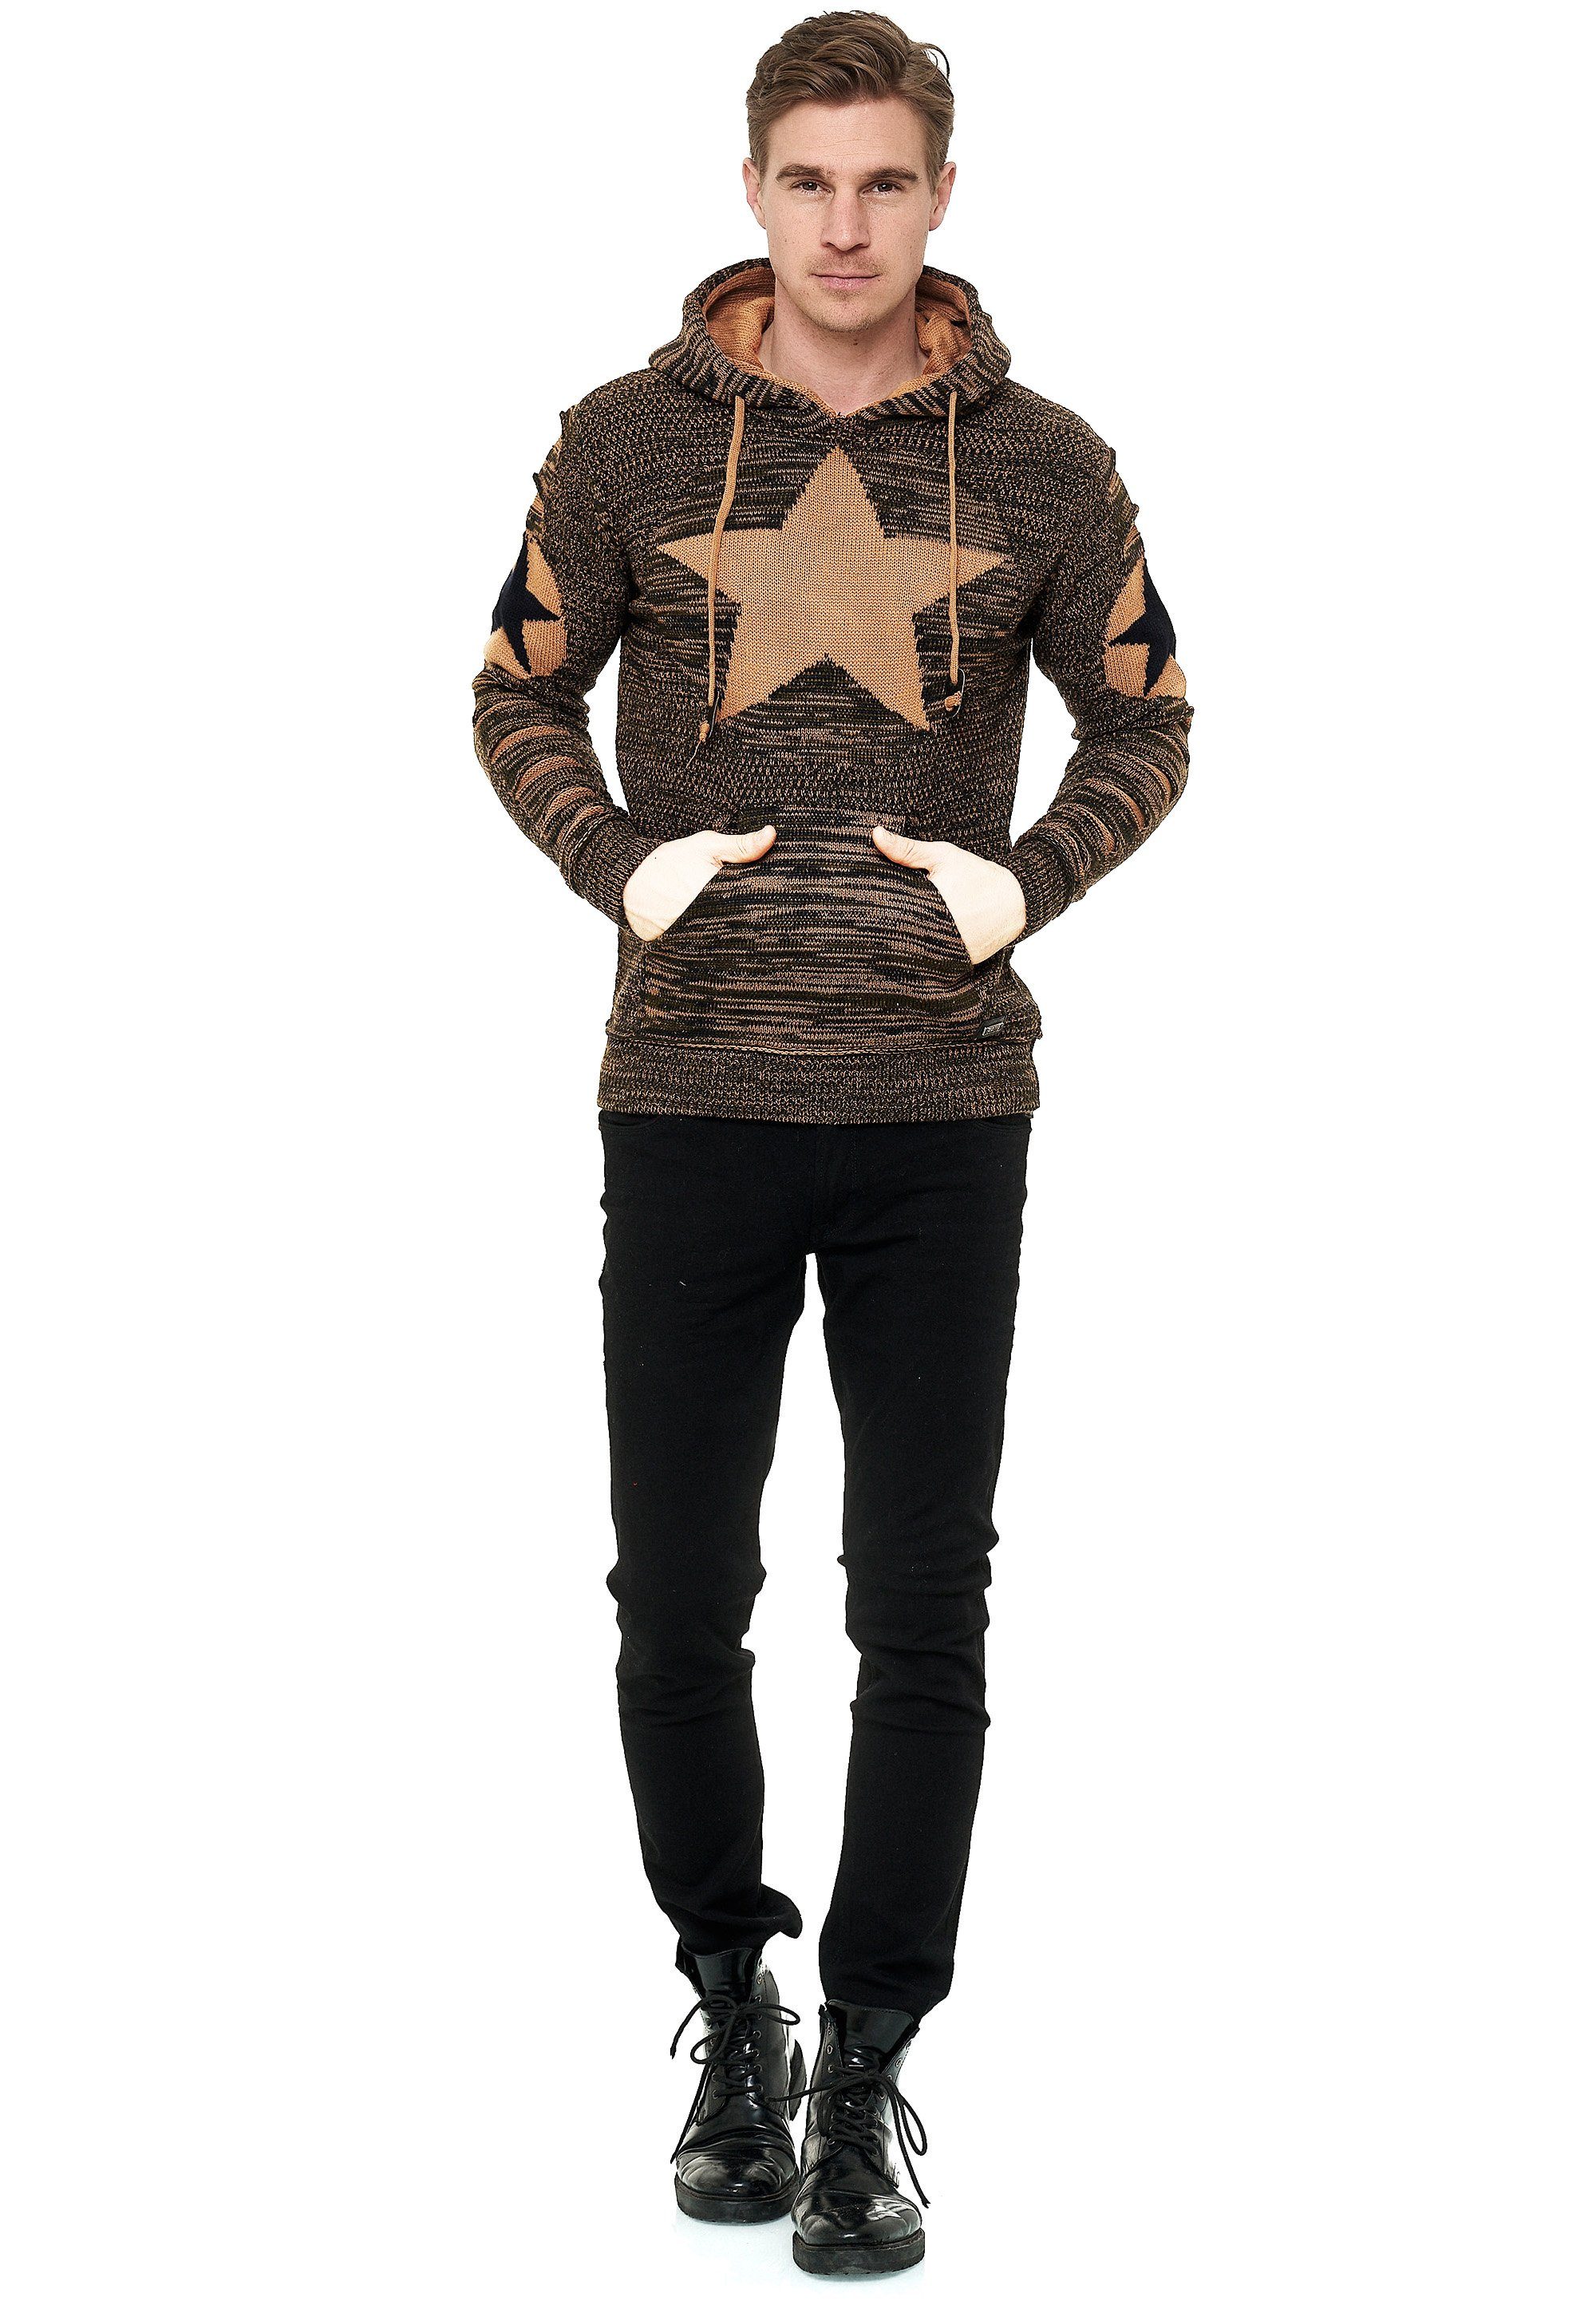 Stern-Design Kapuzensweatshirt Rusty braun-schwarz mit großem Neal